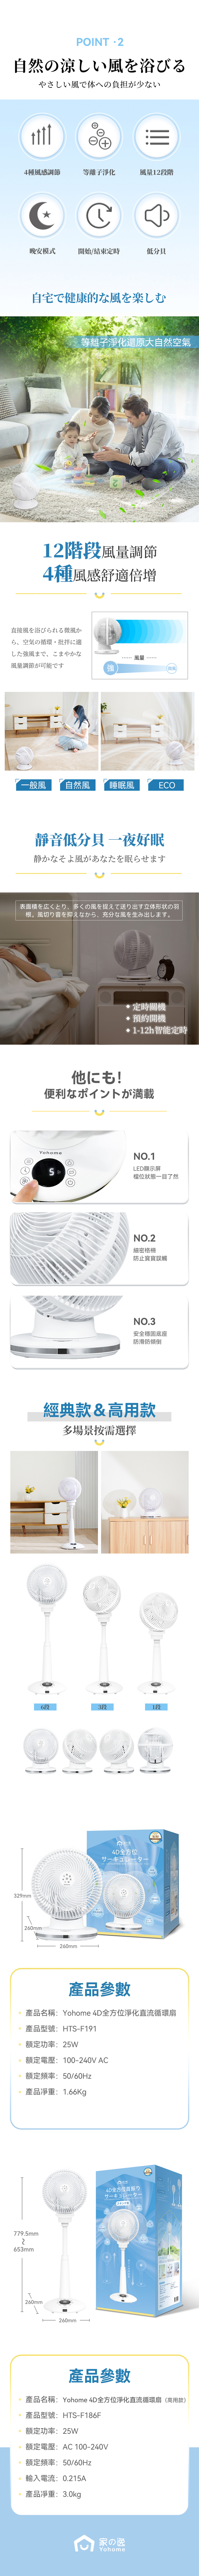 日本Yohome 4D全方位淨化直流伸縮循環扇(高用款) -THINKBUSINESS拓想品牌服務：你的全球新奇好物直供商，品質拓想生活。